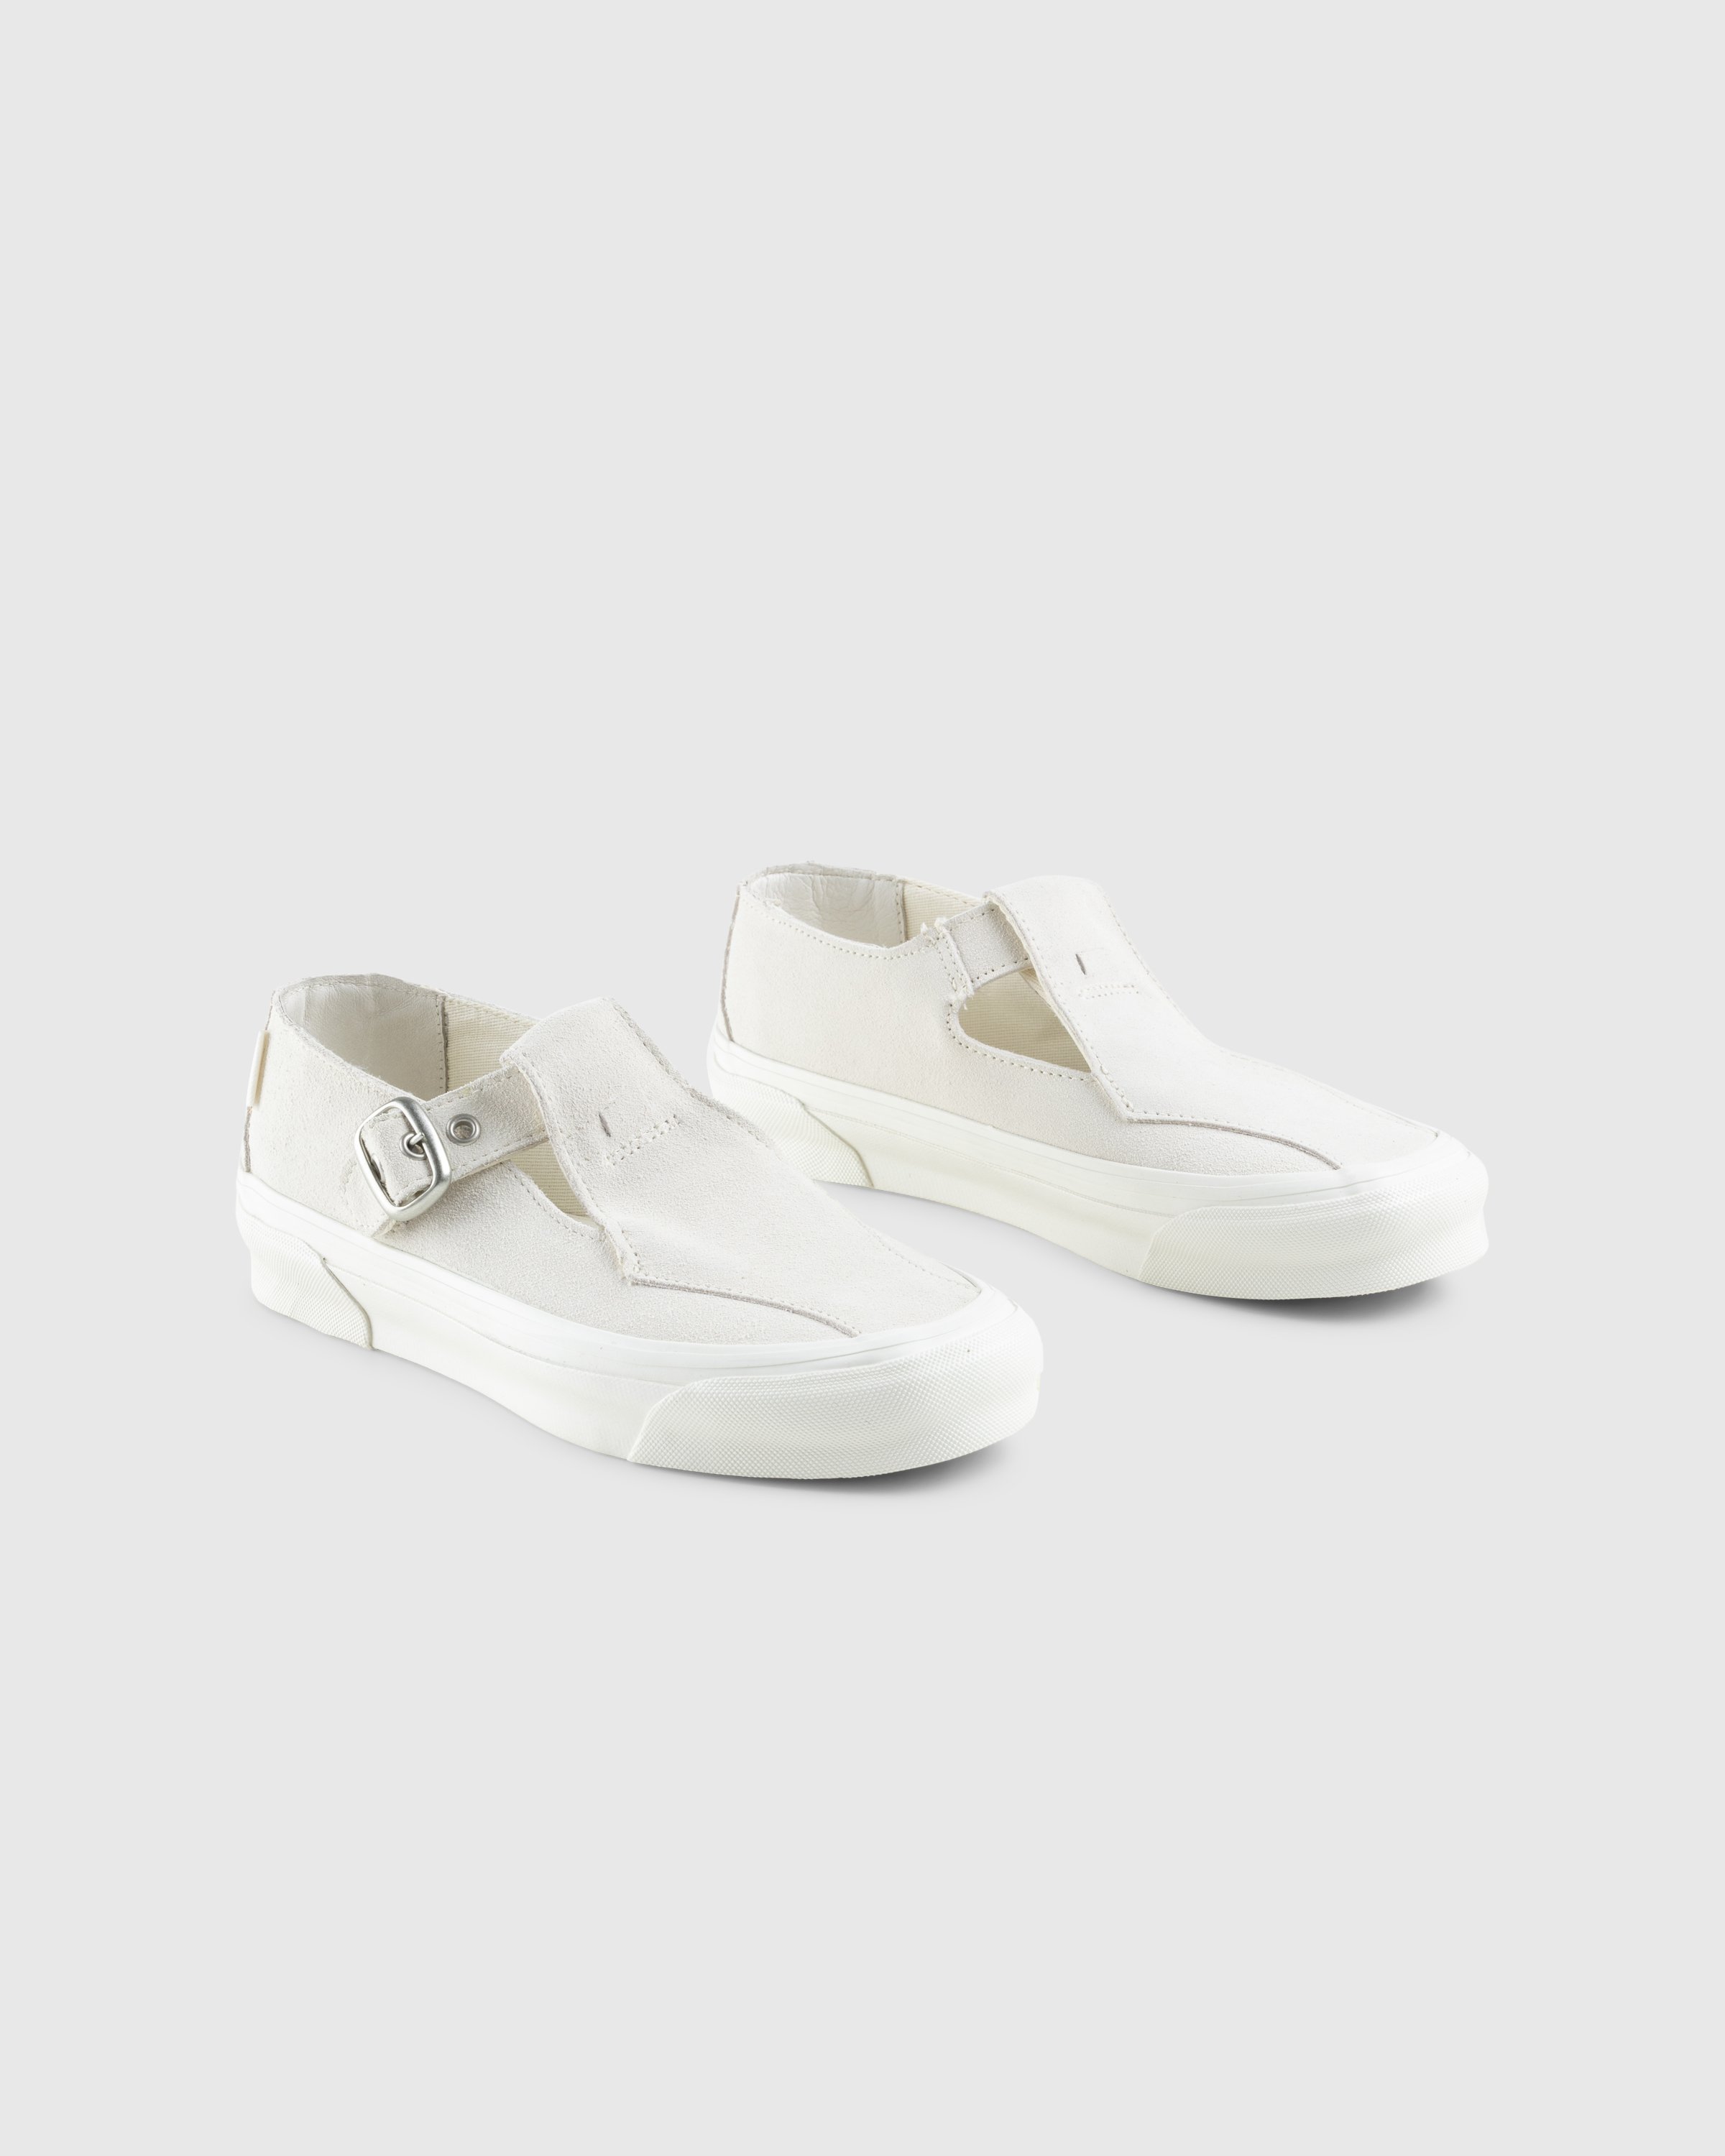 Vans - OG Style 93 LX Marshmallow - Footwear - White - Image 4